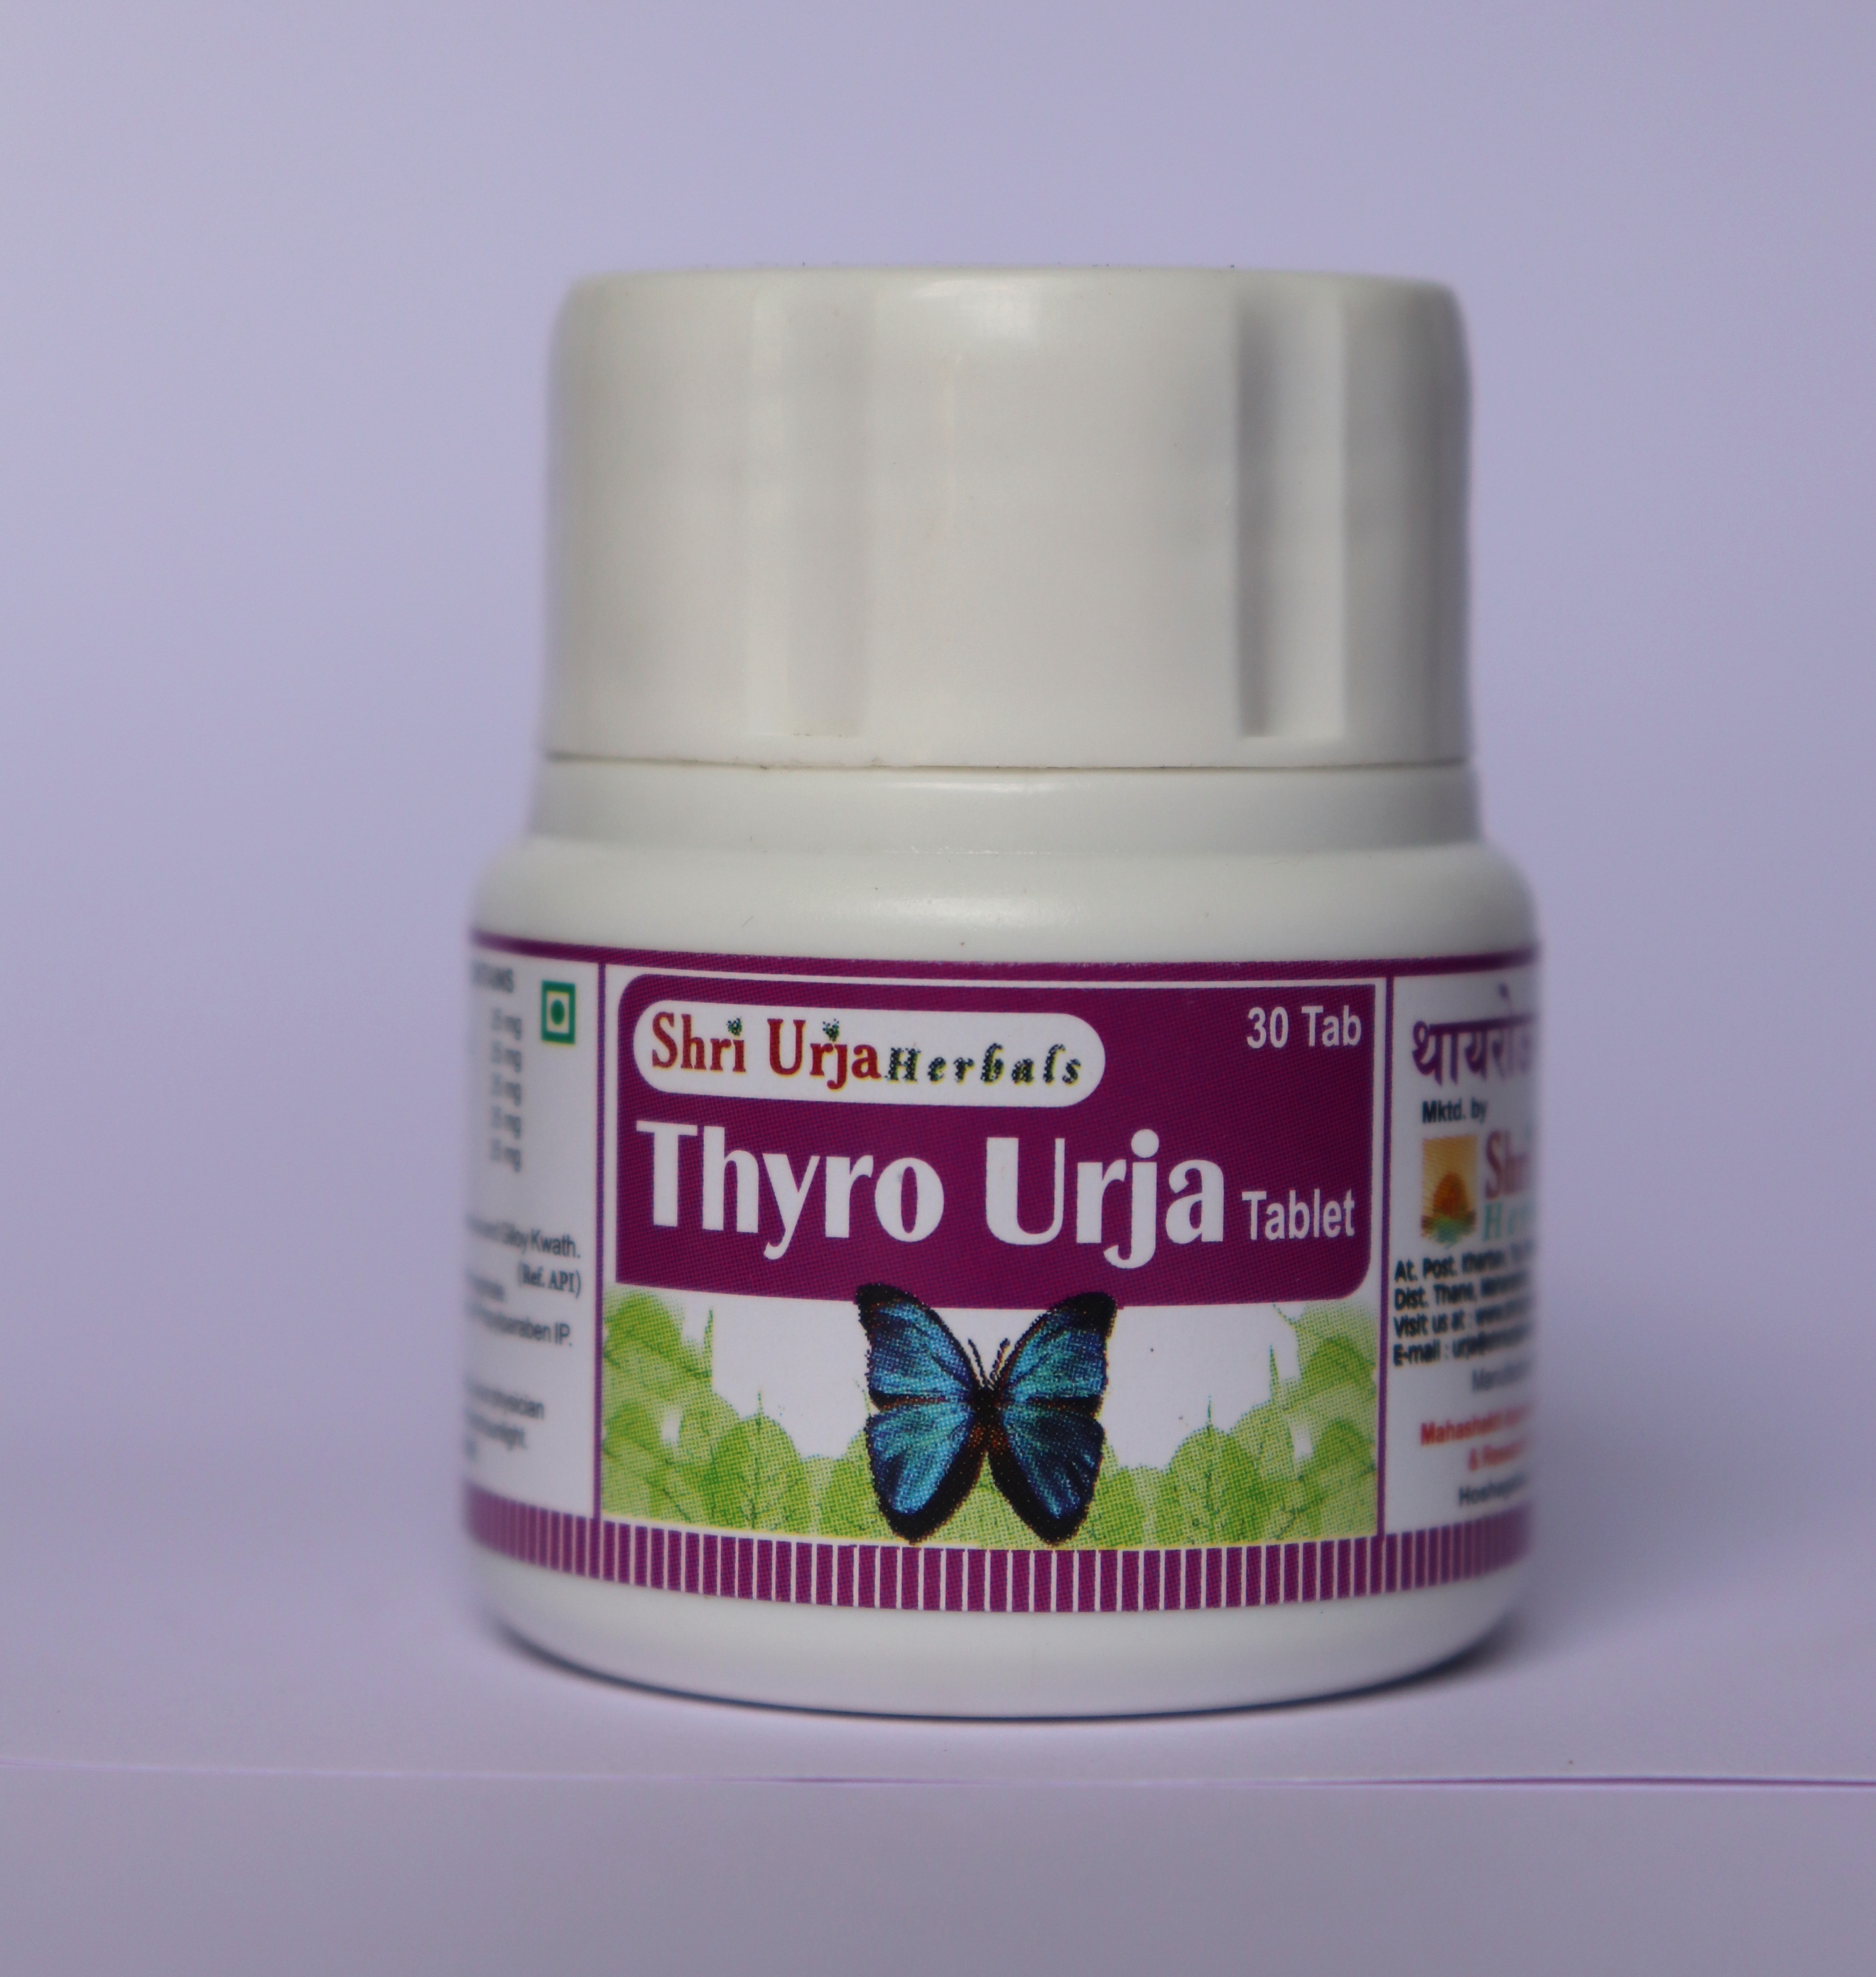 Thyro Urja Tablet 